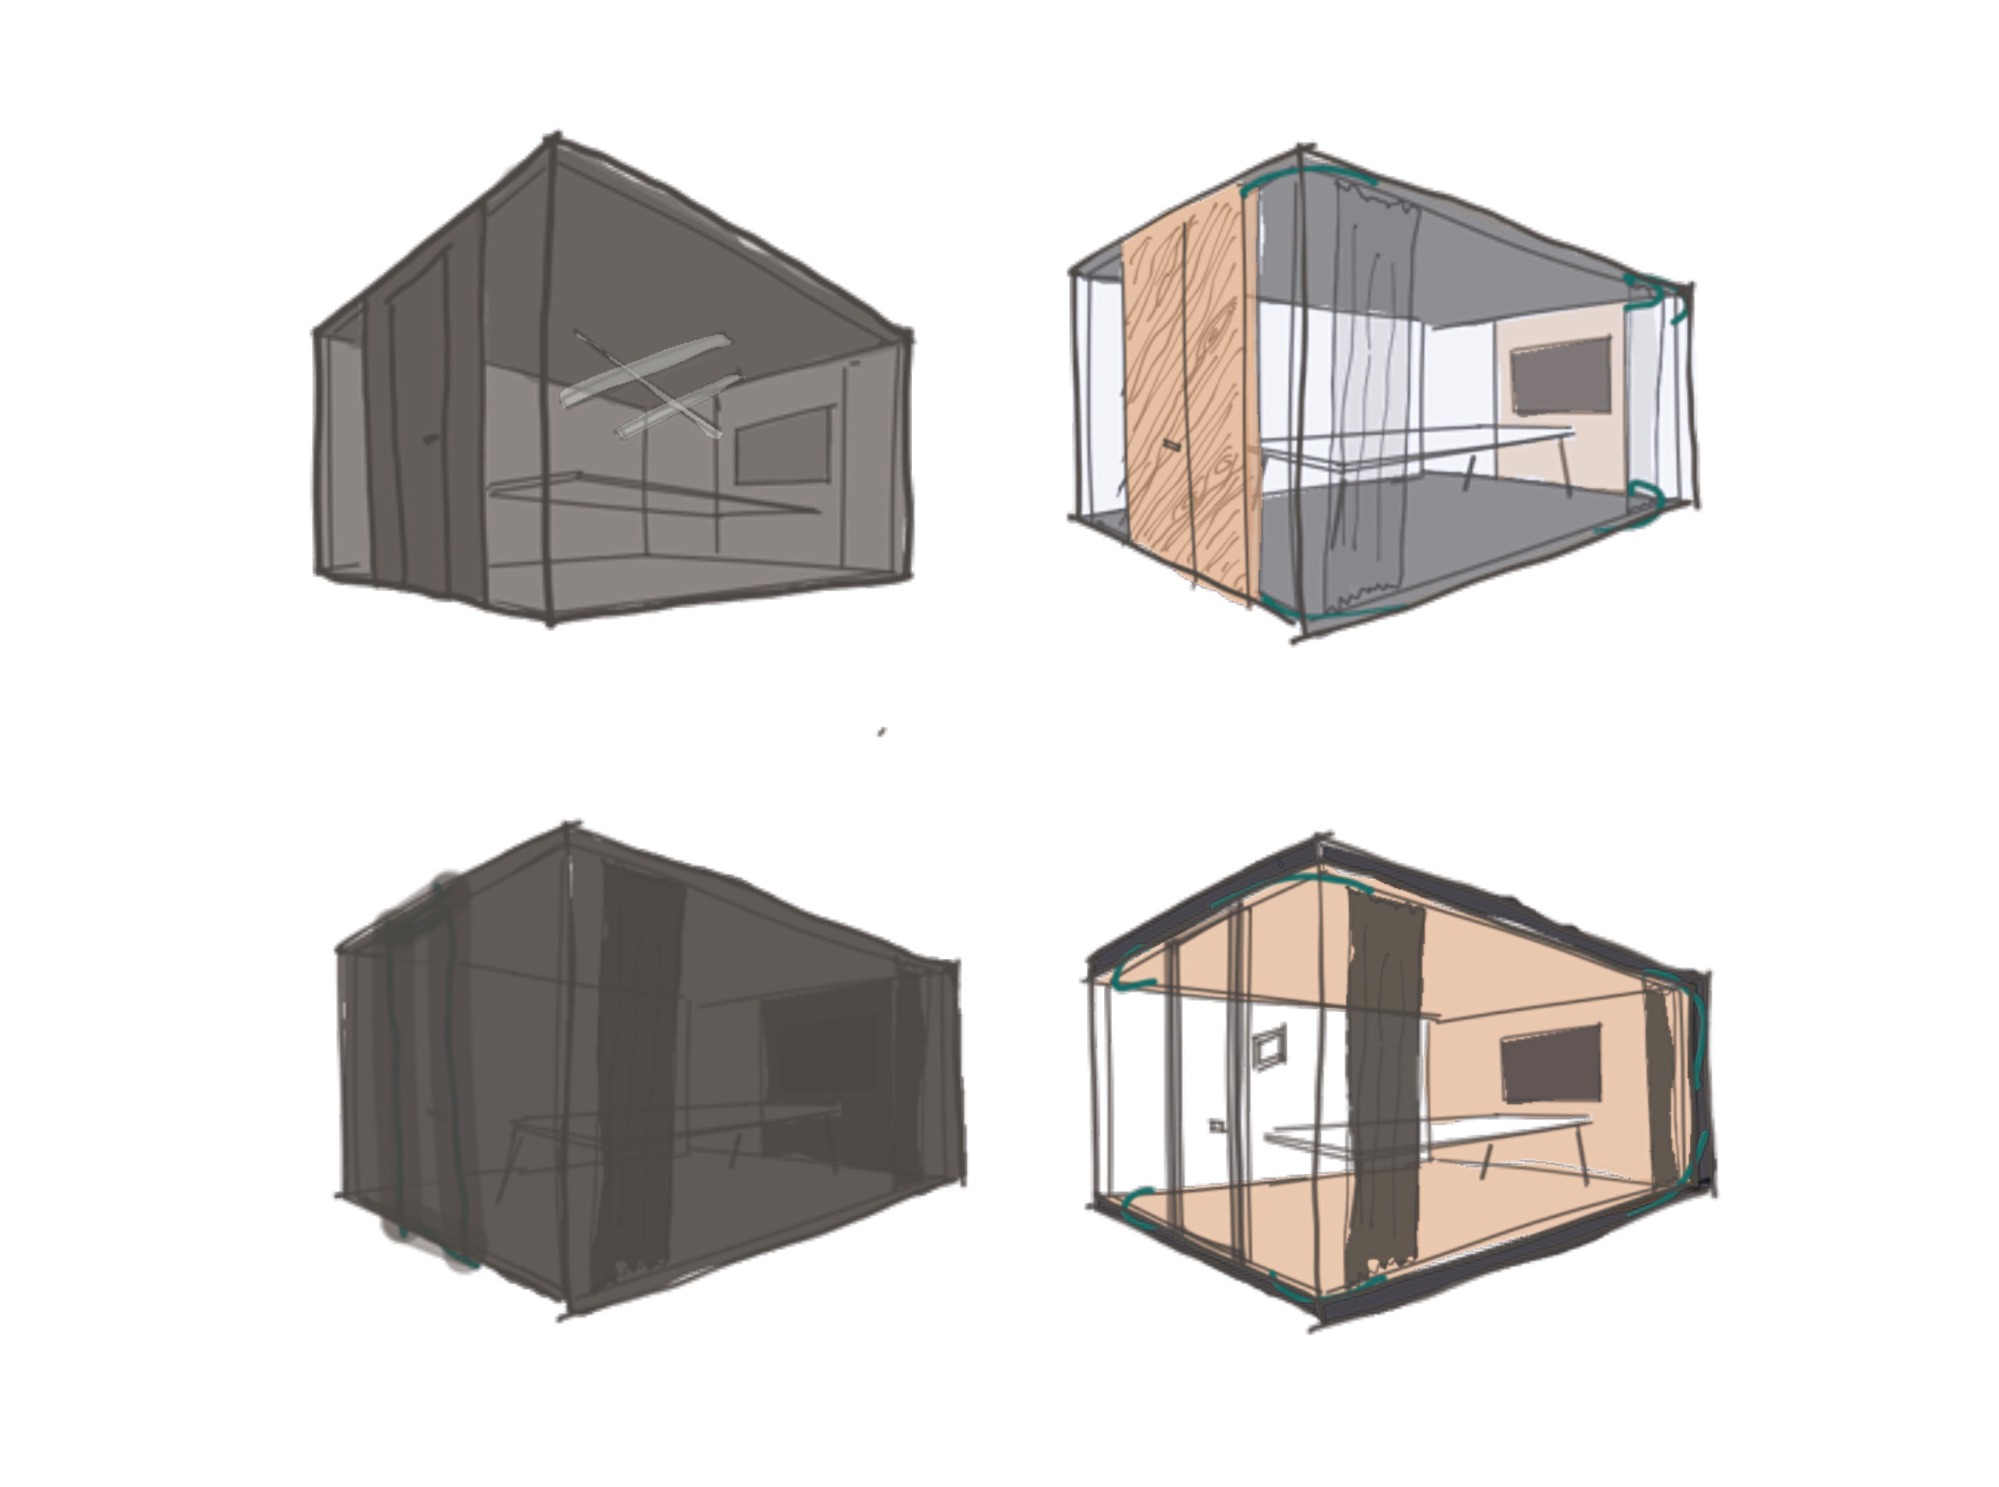 Prvotní návrhy designu zasedací místnosti OASIS od architektonického studia Reaktor.